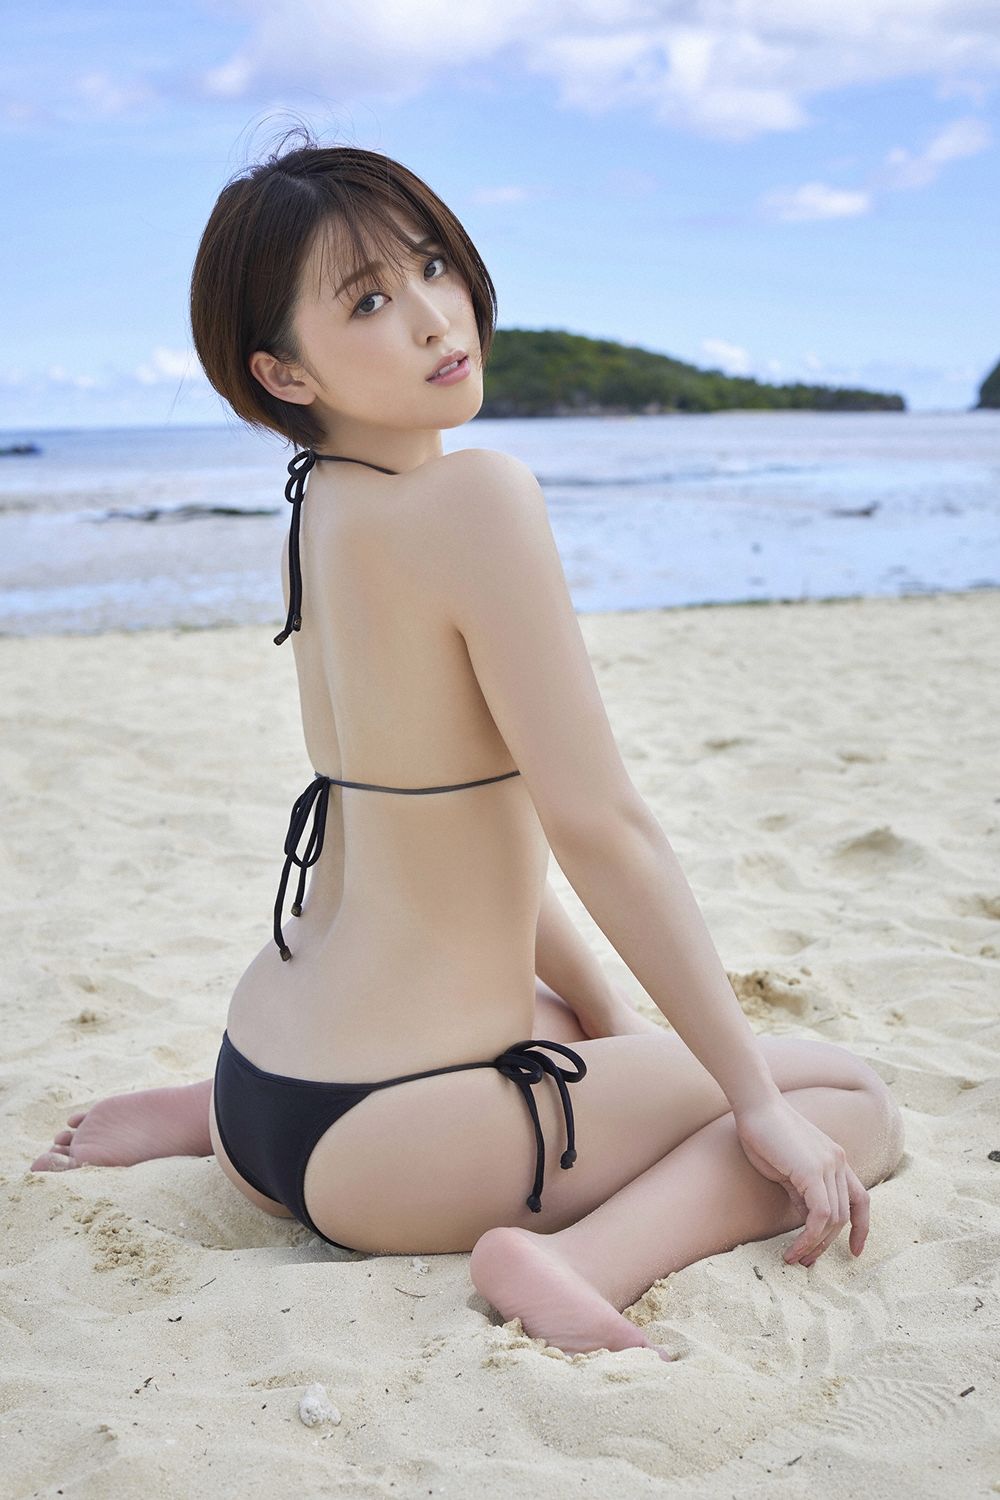 [YS Web]美胸女神海边美女沙滩美女日本比基尼:忍野さら高品质壁纸图片珍藏版(100P)